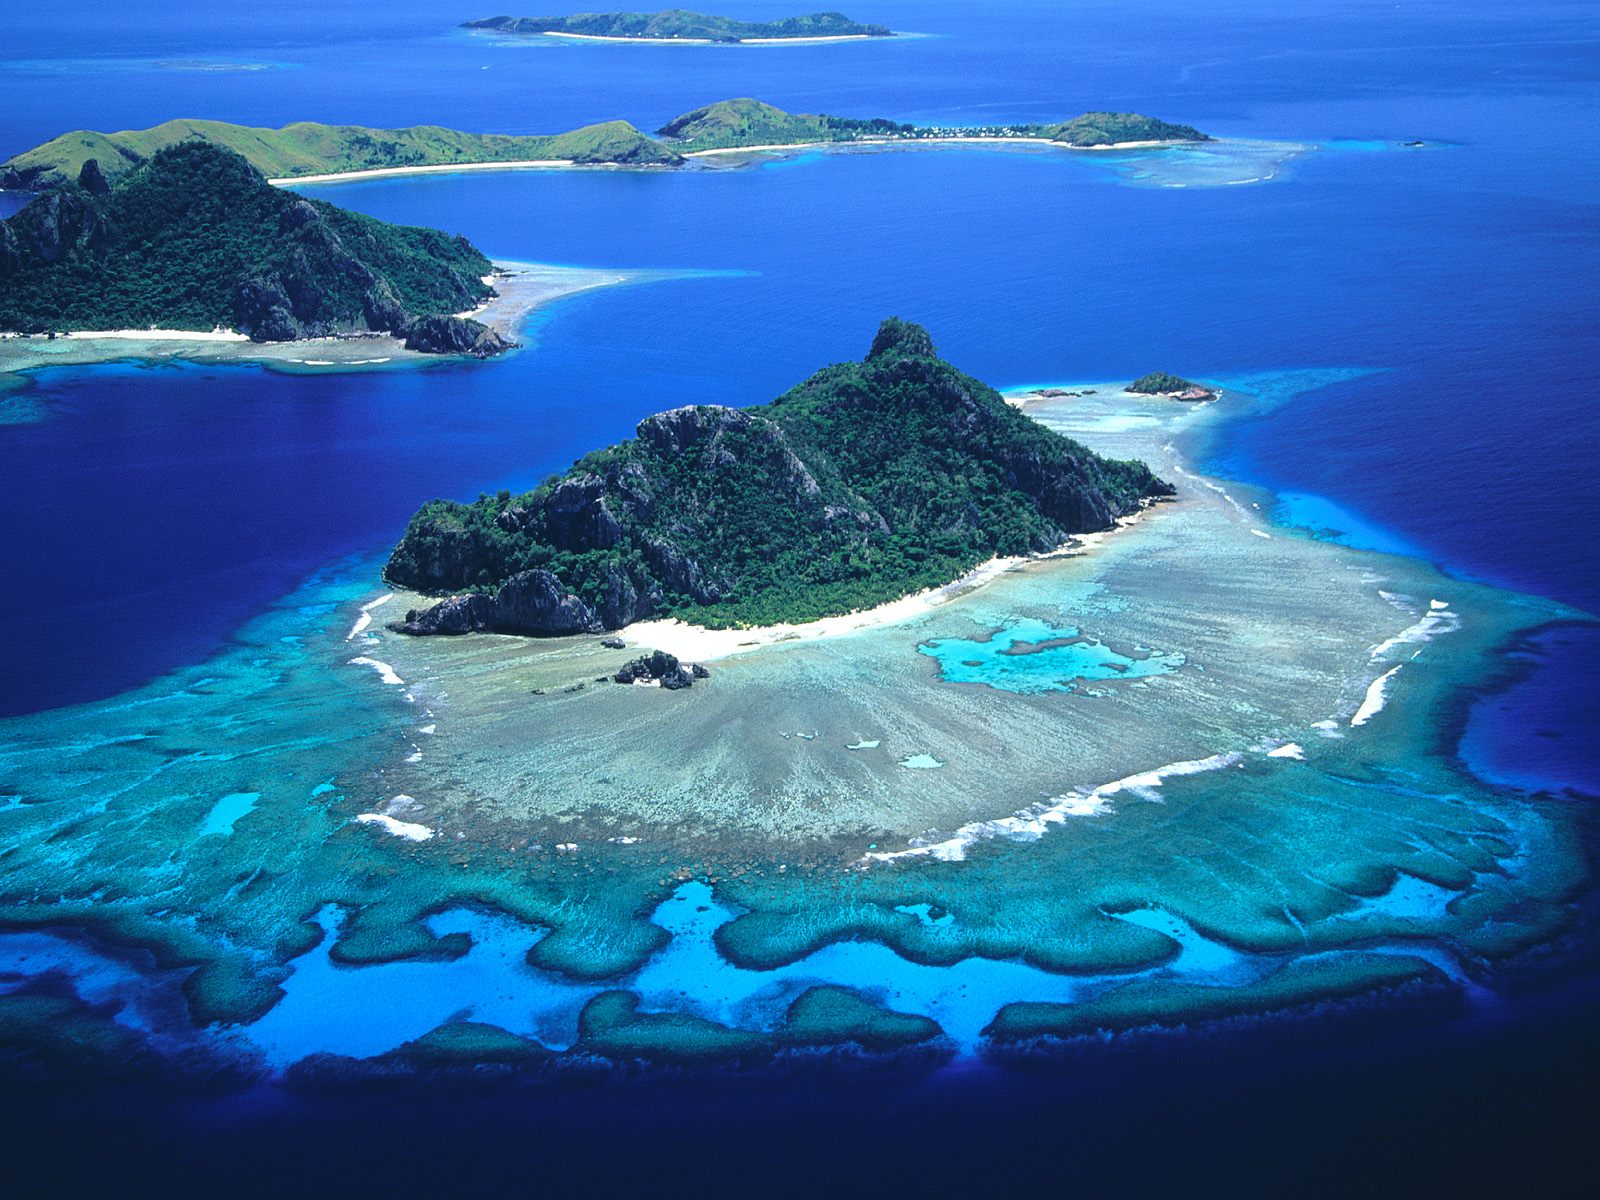 (Islands in Fiji's Lau Group)